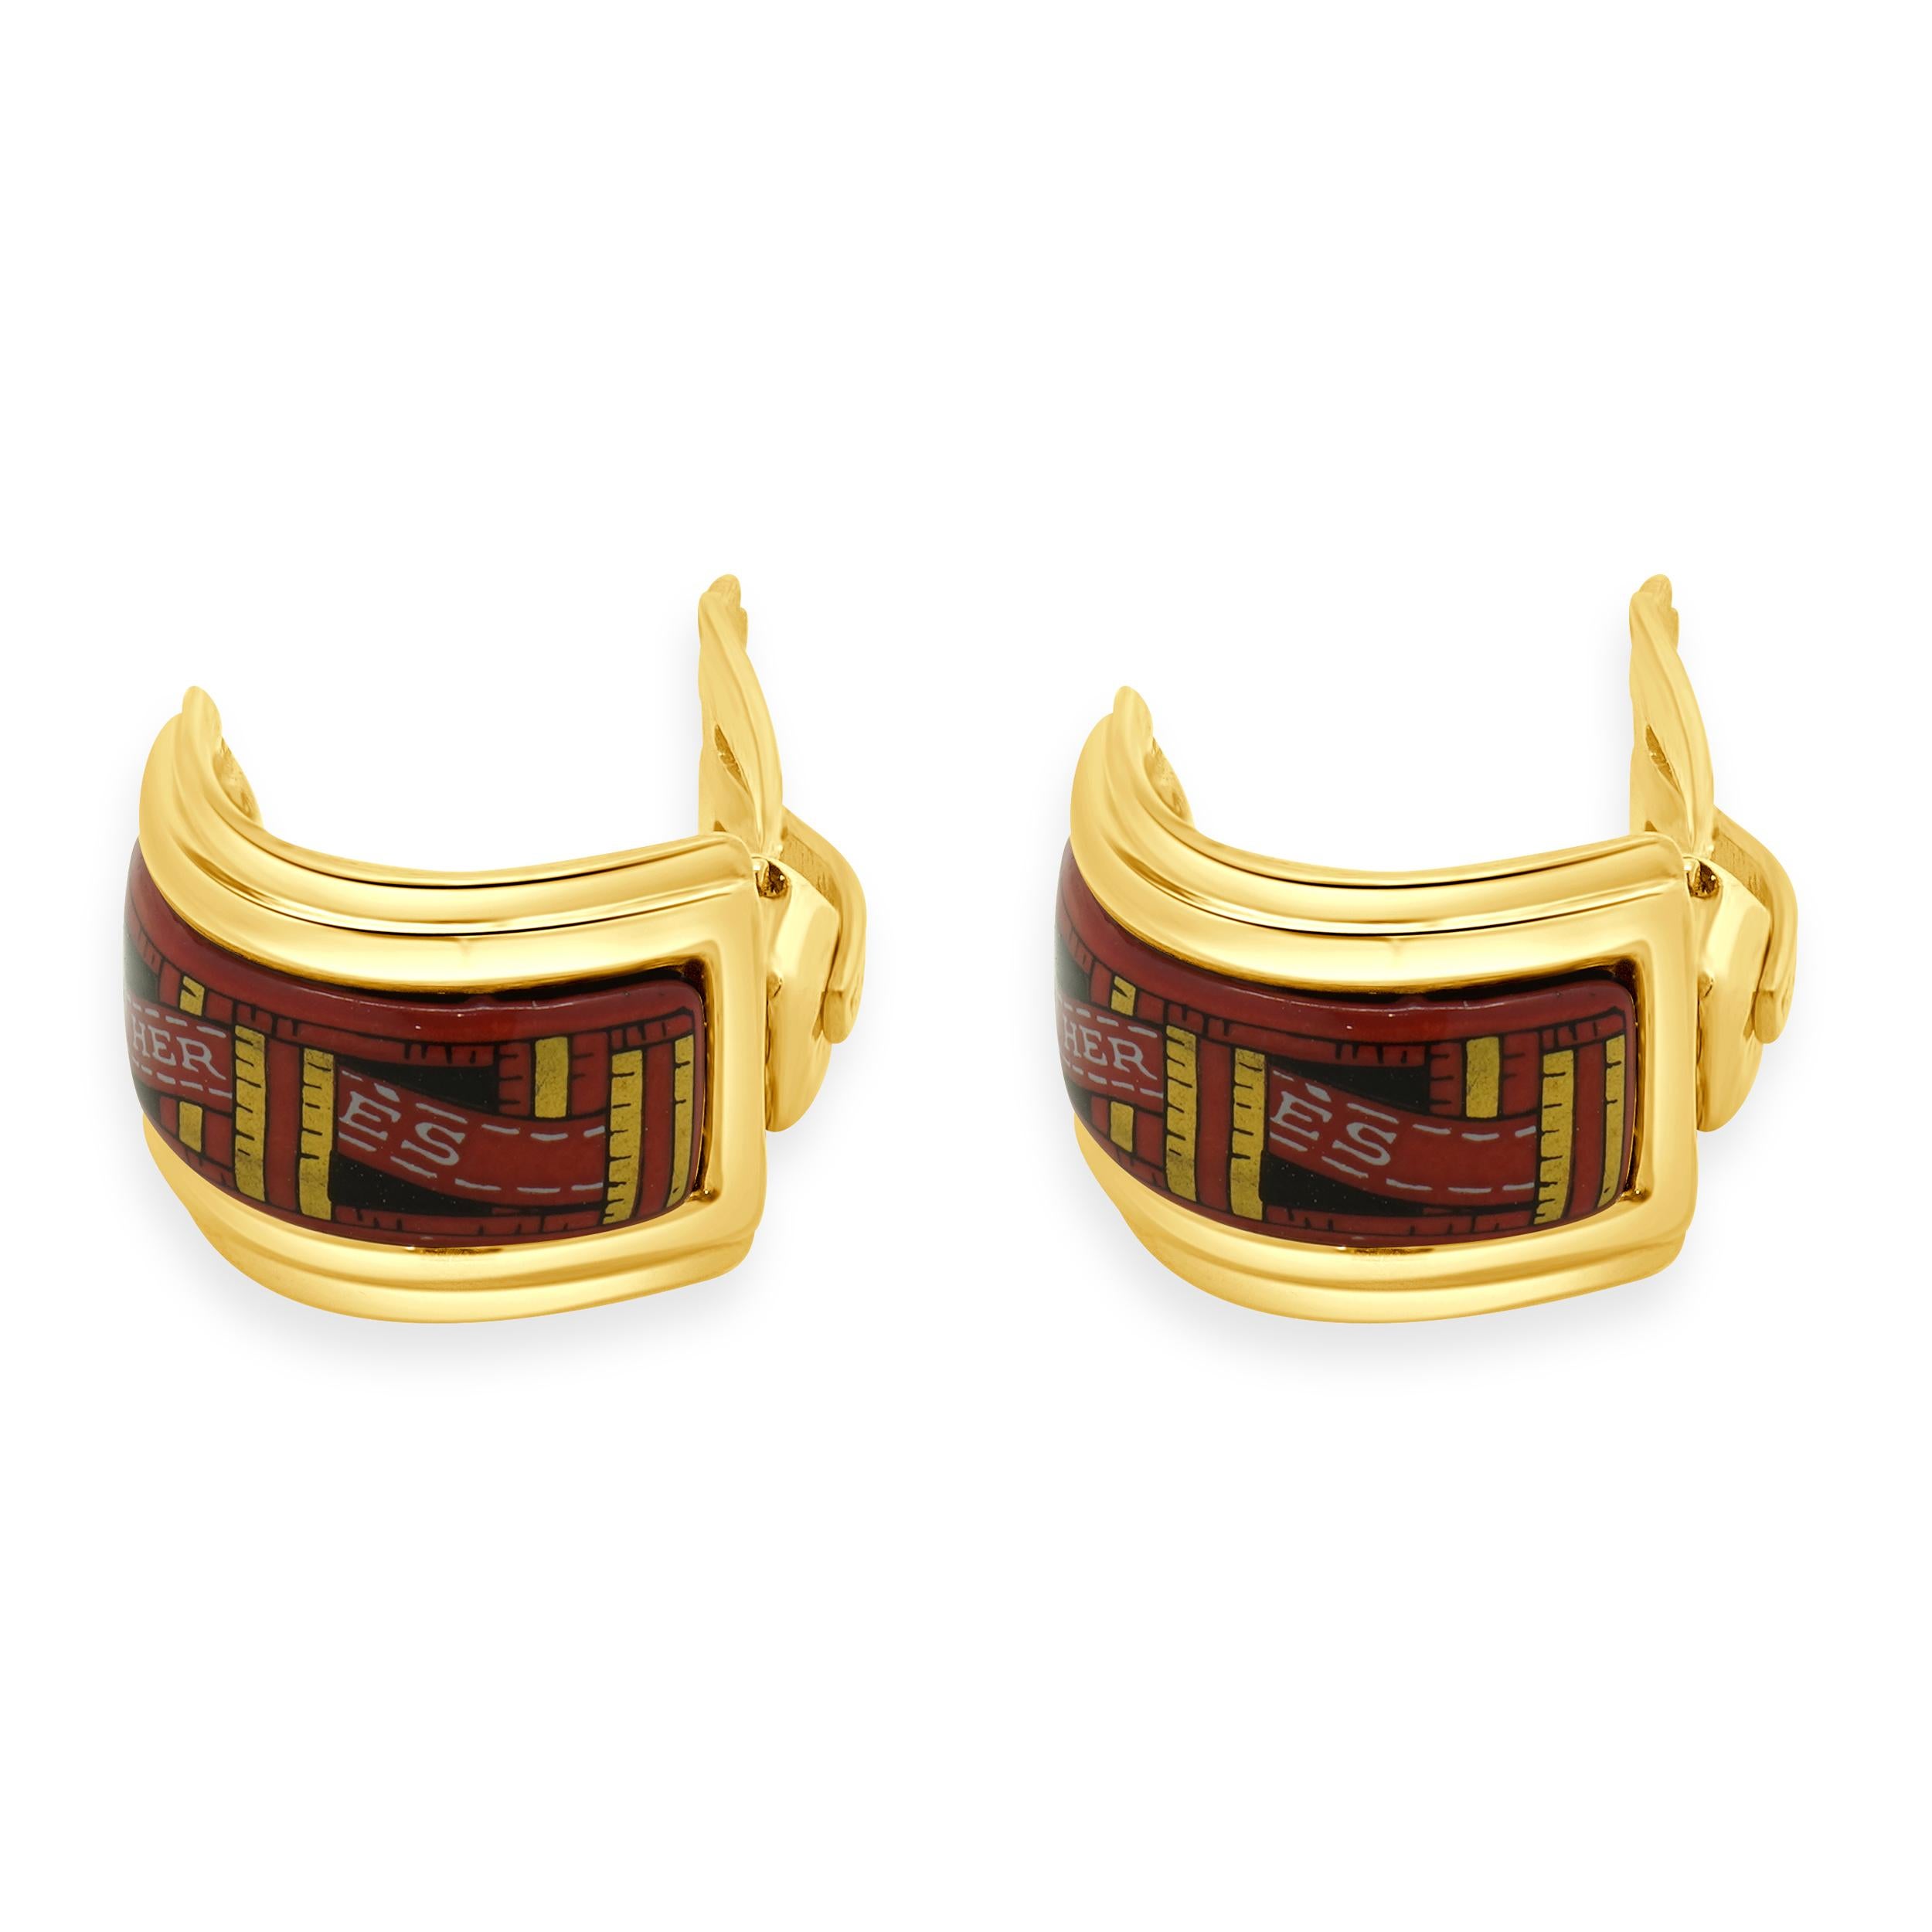 Designer: Hermes
MATERIAL: vergoldet
Abmessungen: Ohrringe messen 21,5 x 14,3 mm
Gewicht: 14,24 Gramm
